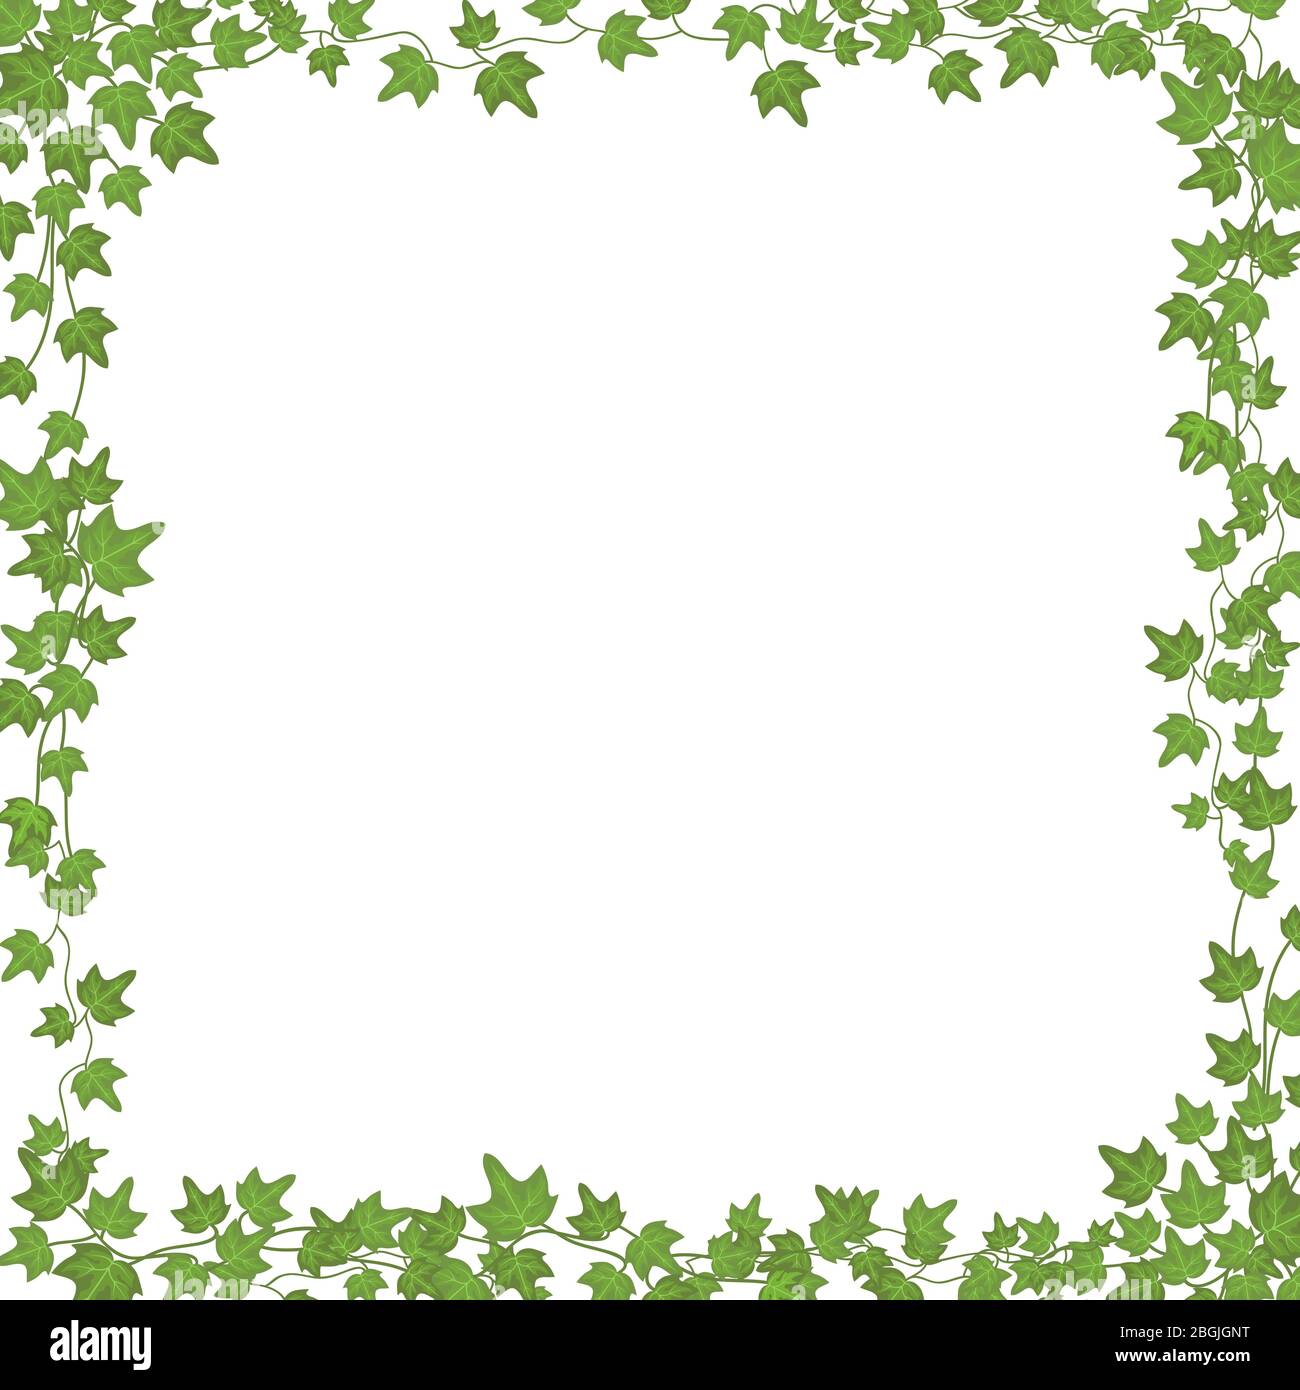 Efeu-Reben mit grünen Blättern. Floraler Vektor rechteckiger Rahmen isoliert auf weißem Hintergrund. Illustration grüne Pflanze, Zweig Rebe Zweig, Efeu rechteckigen Rahmen mit Kopie Raum Stock Vektor